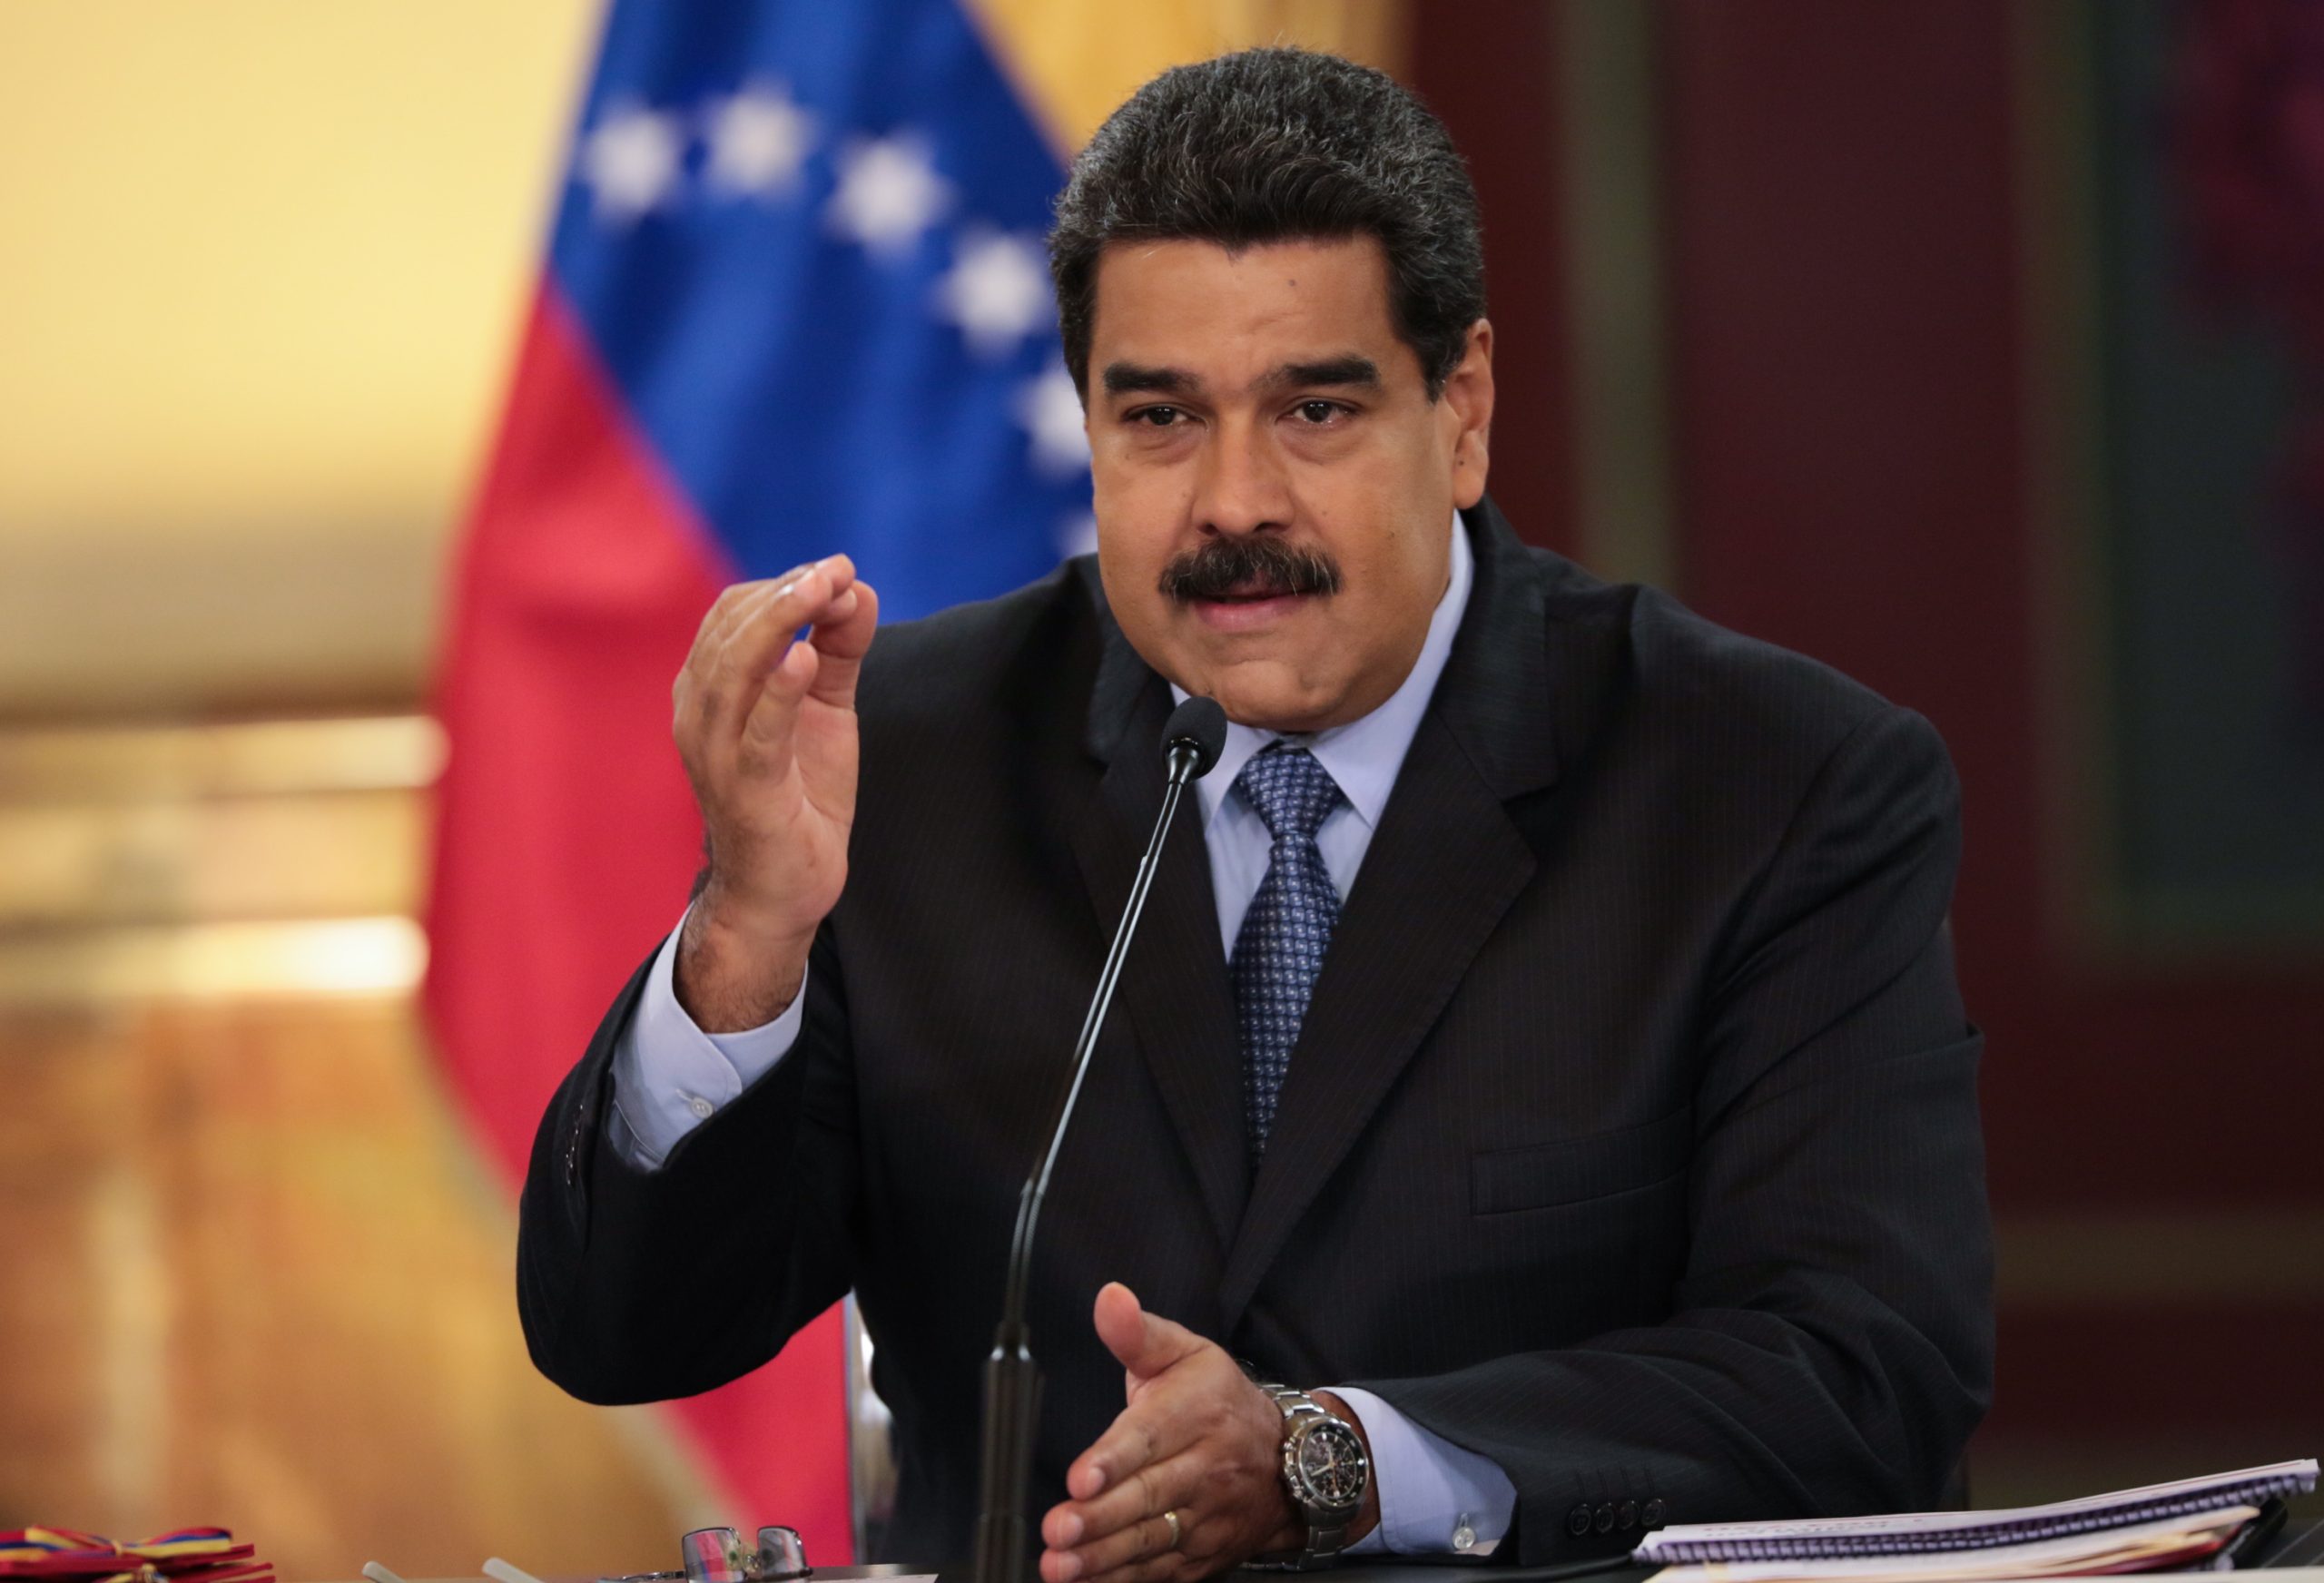 Σύνοδος της Αμερικής: Ο Μαδούρο εξαίρει τη στάση του Ομπραδόρ και καταγγέλλει «διάκριση» σε βάρος της Βενεζουέλας από τις ΗΠΑ